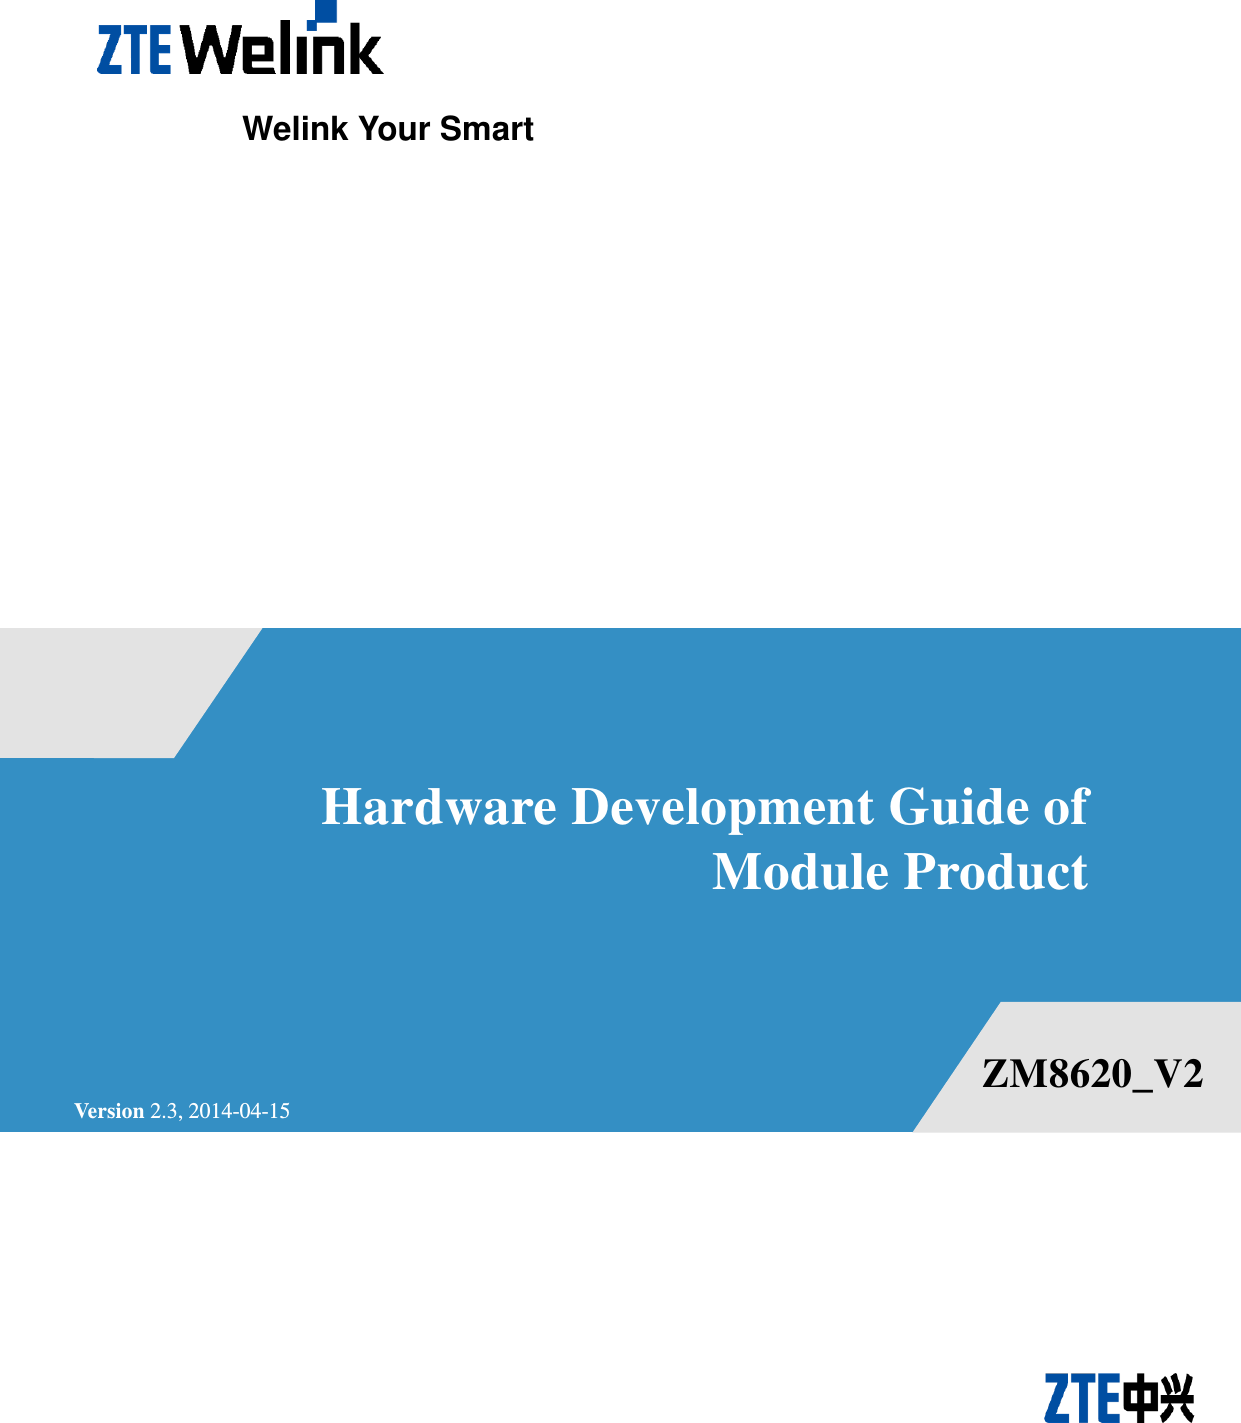                       Hardware Development Guide of Module Product    Welink Your Smart Version 2.3, 2014-04-15 ZM8620_V2 